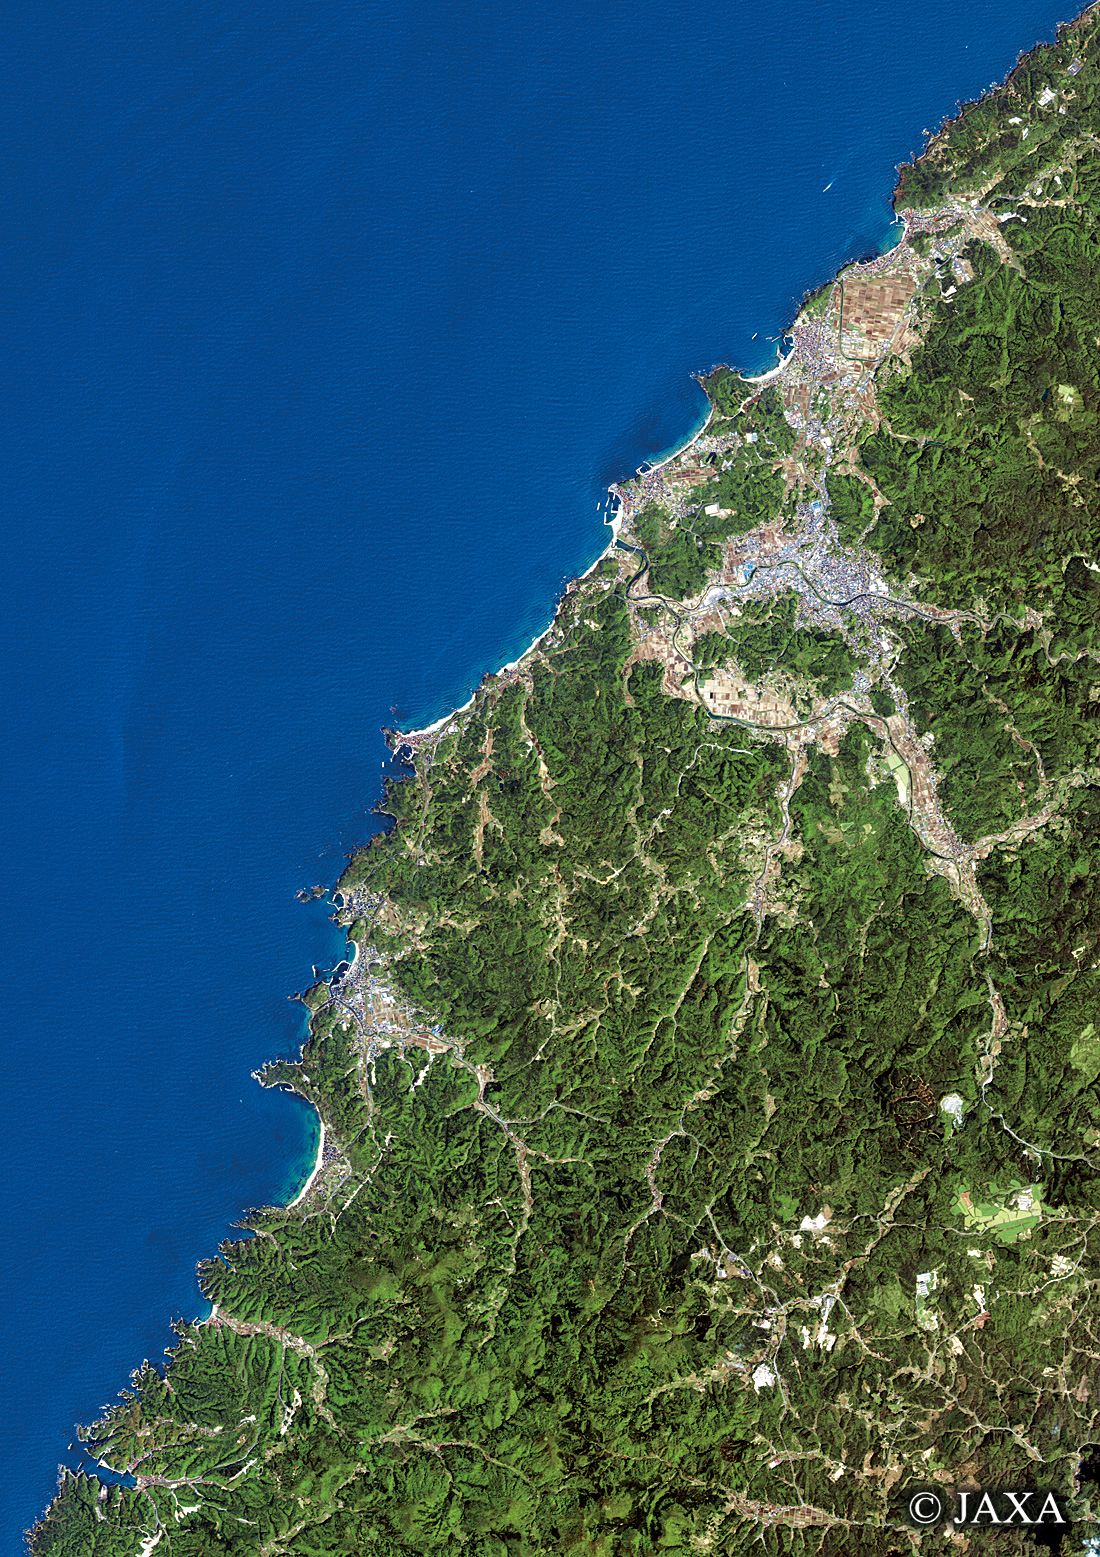 だいちから見た日本の都市 大田市周辺:衛星画像